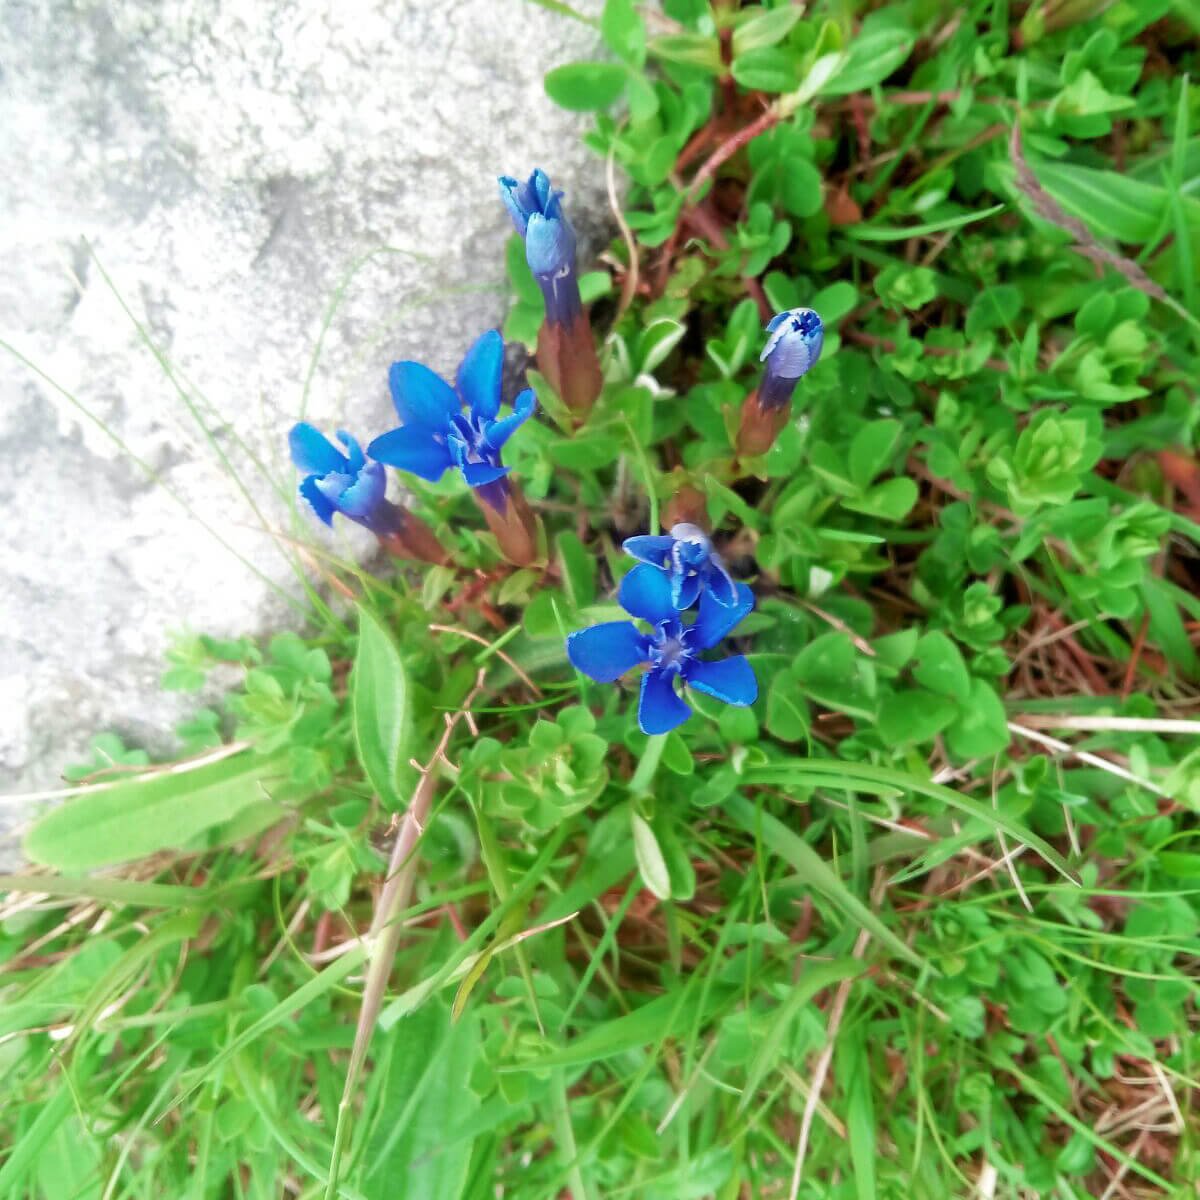 Blue Spring Gentian wildflowers growing in Ireland